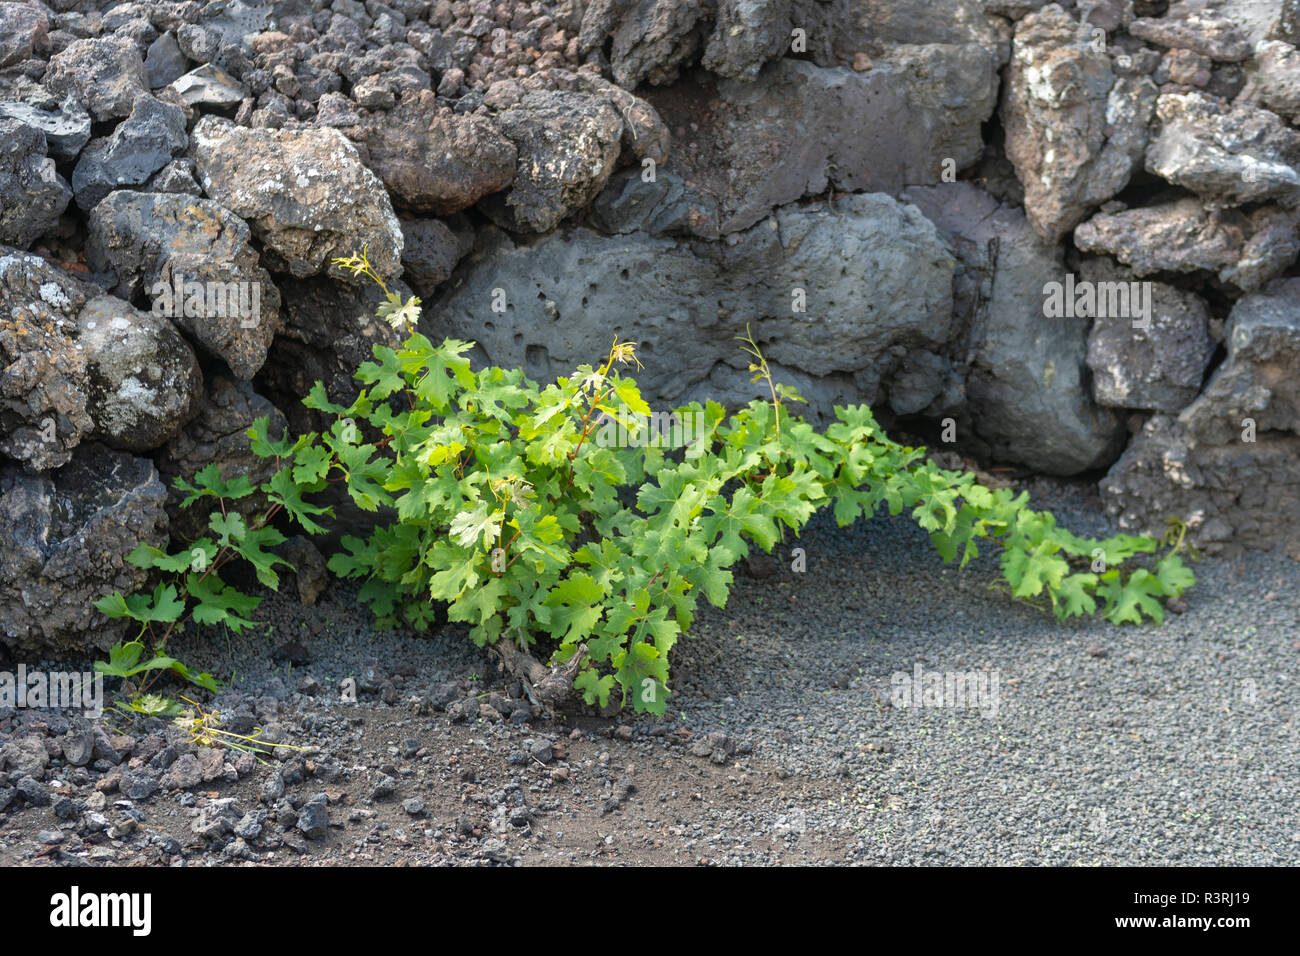 Weinpflanze in dunklen lava Boden. Insel Lanzarote, Kanarische Inseln, Spanien Stockfoto